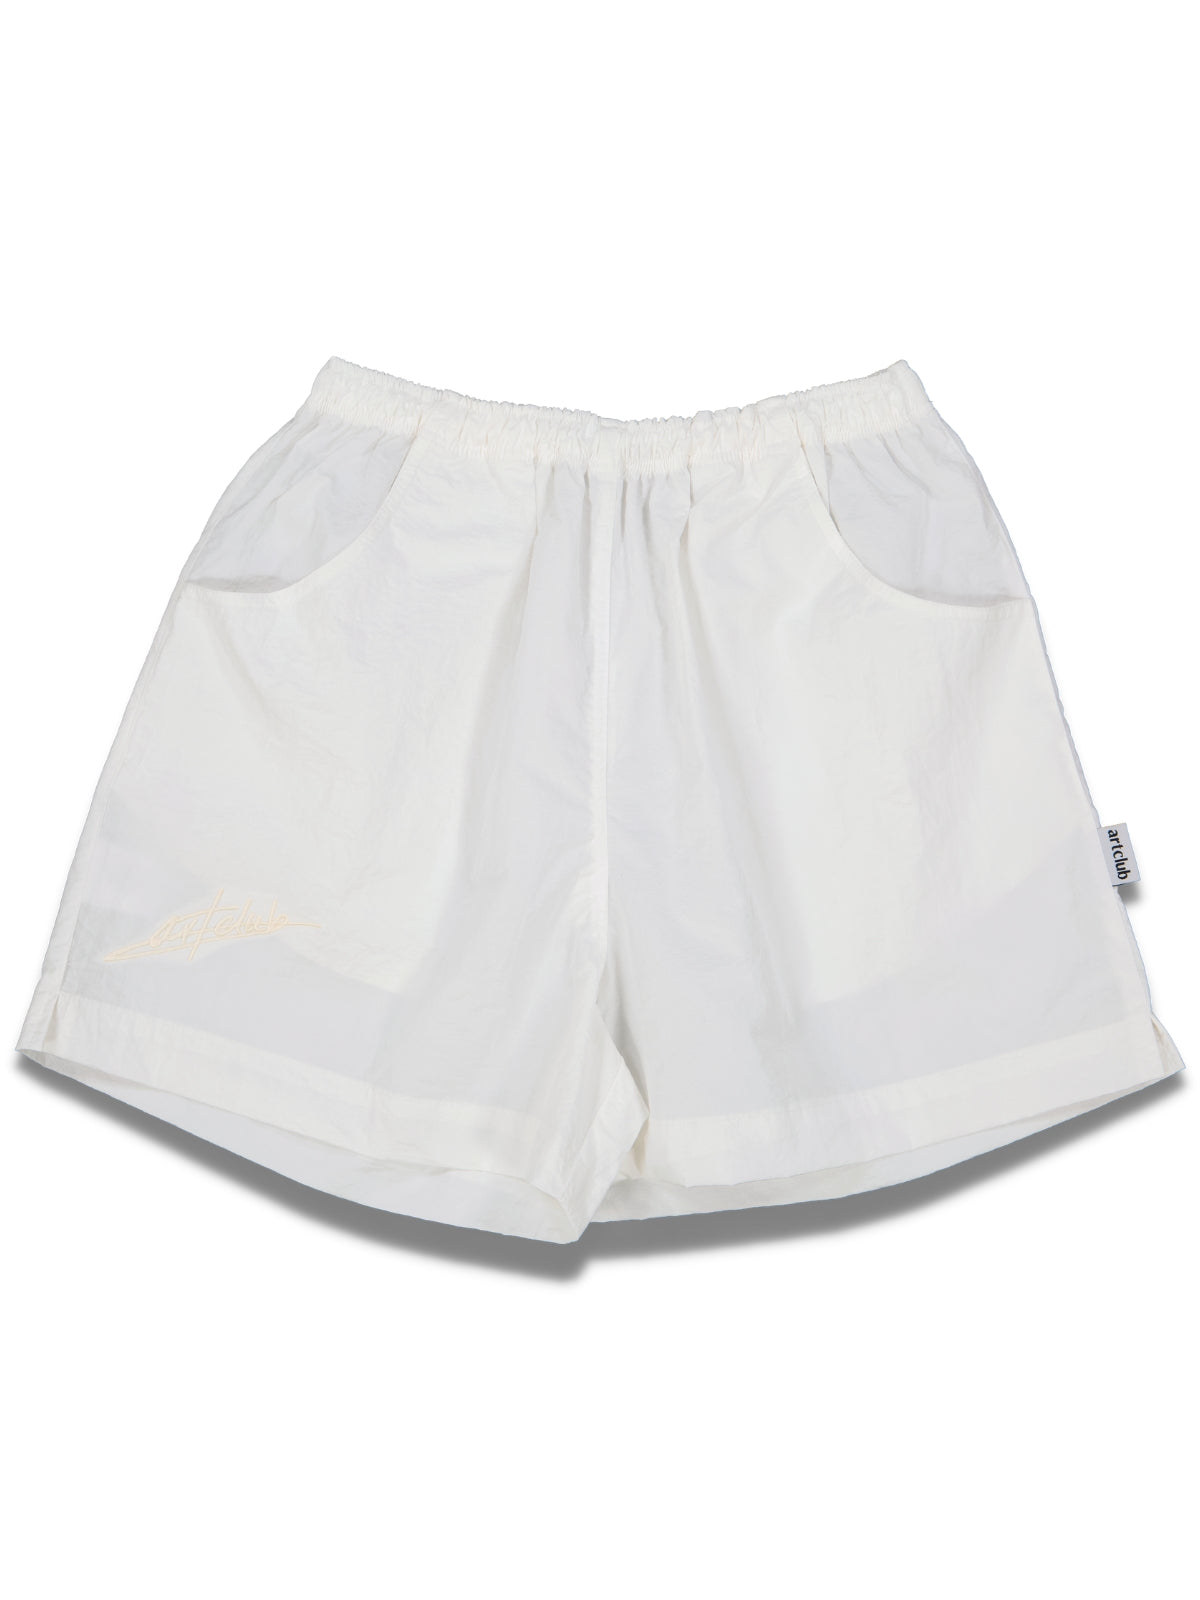 Textured Taslon Shorts - Milk